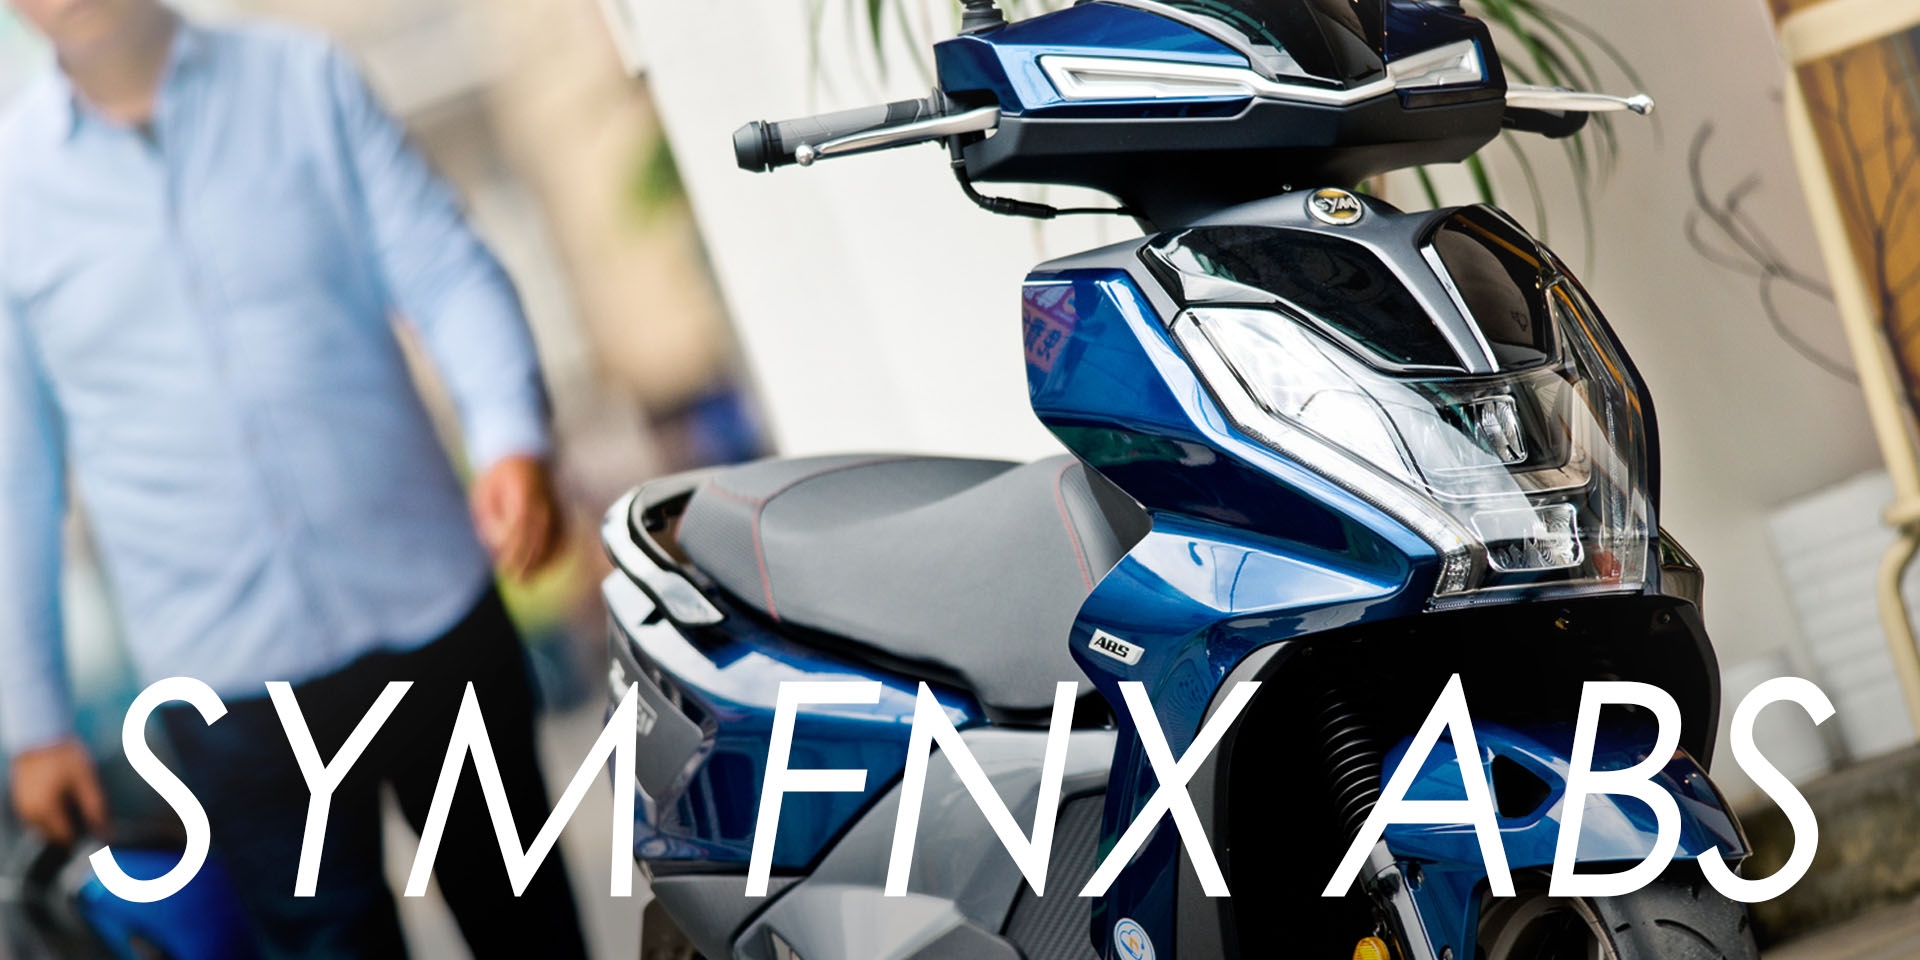 職人報告！三零科技 SYM FNX ABS 安全再加值